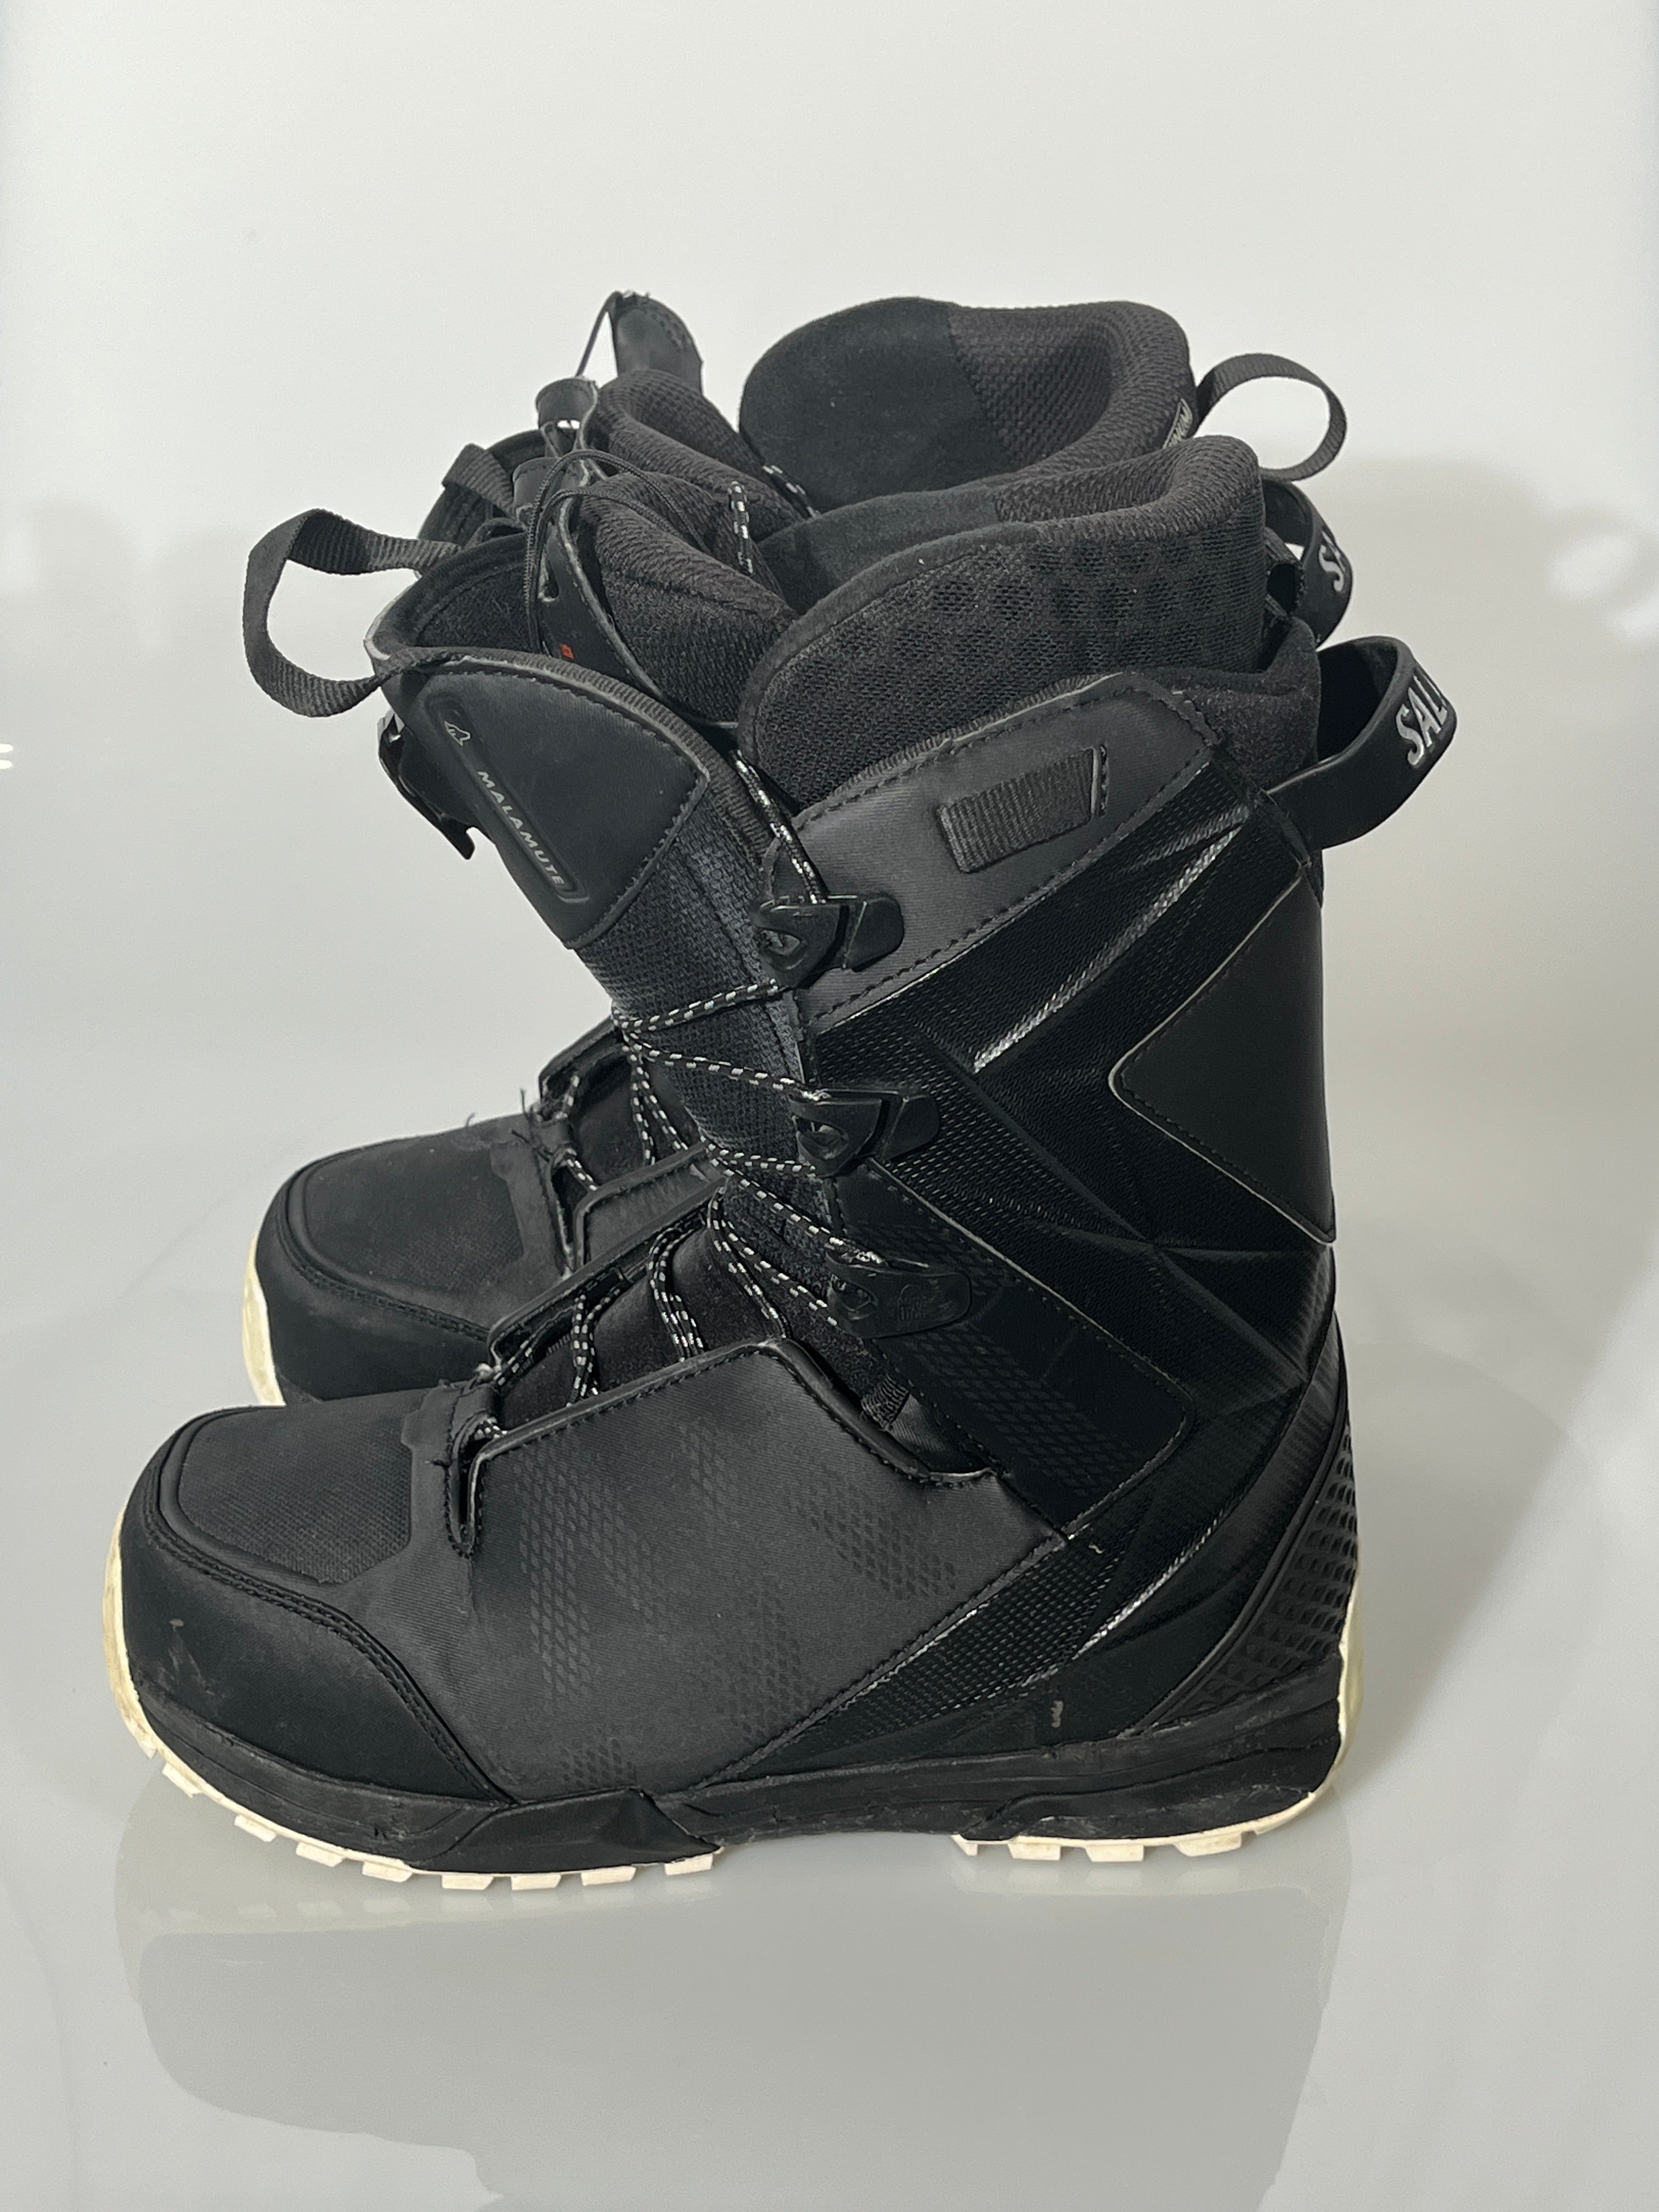 Salomon Malamute Snowboard Boots – The Locals Sale